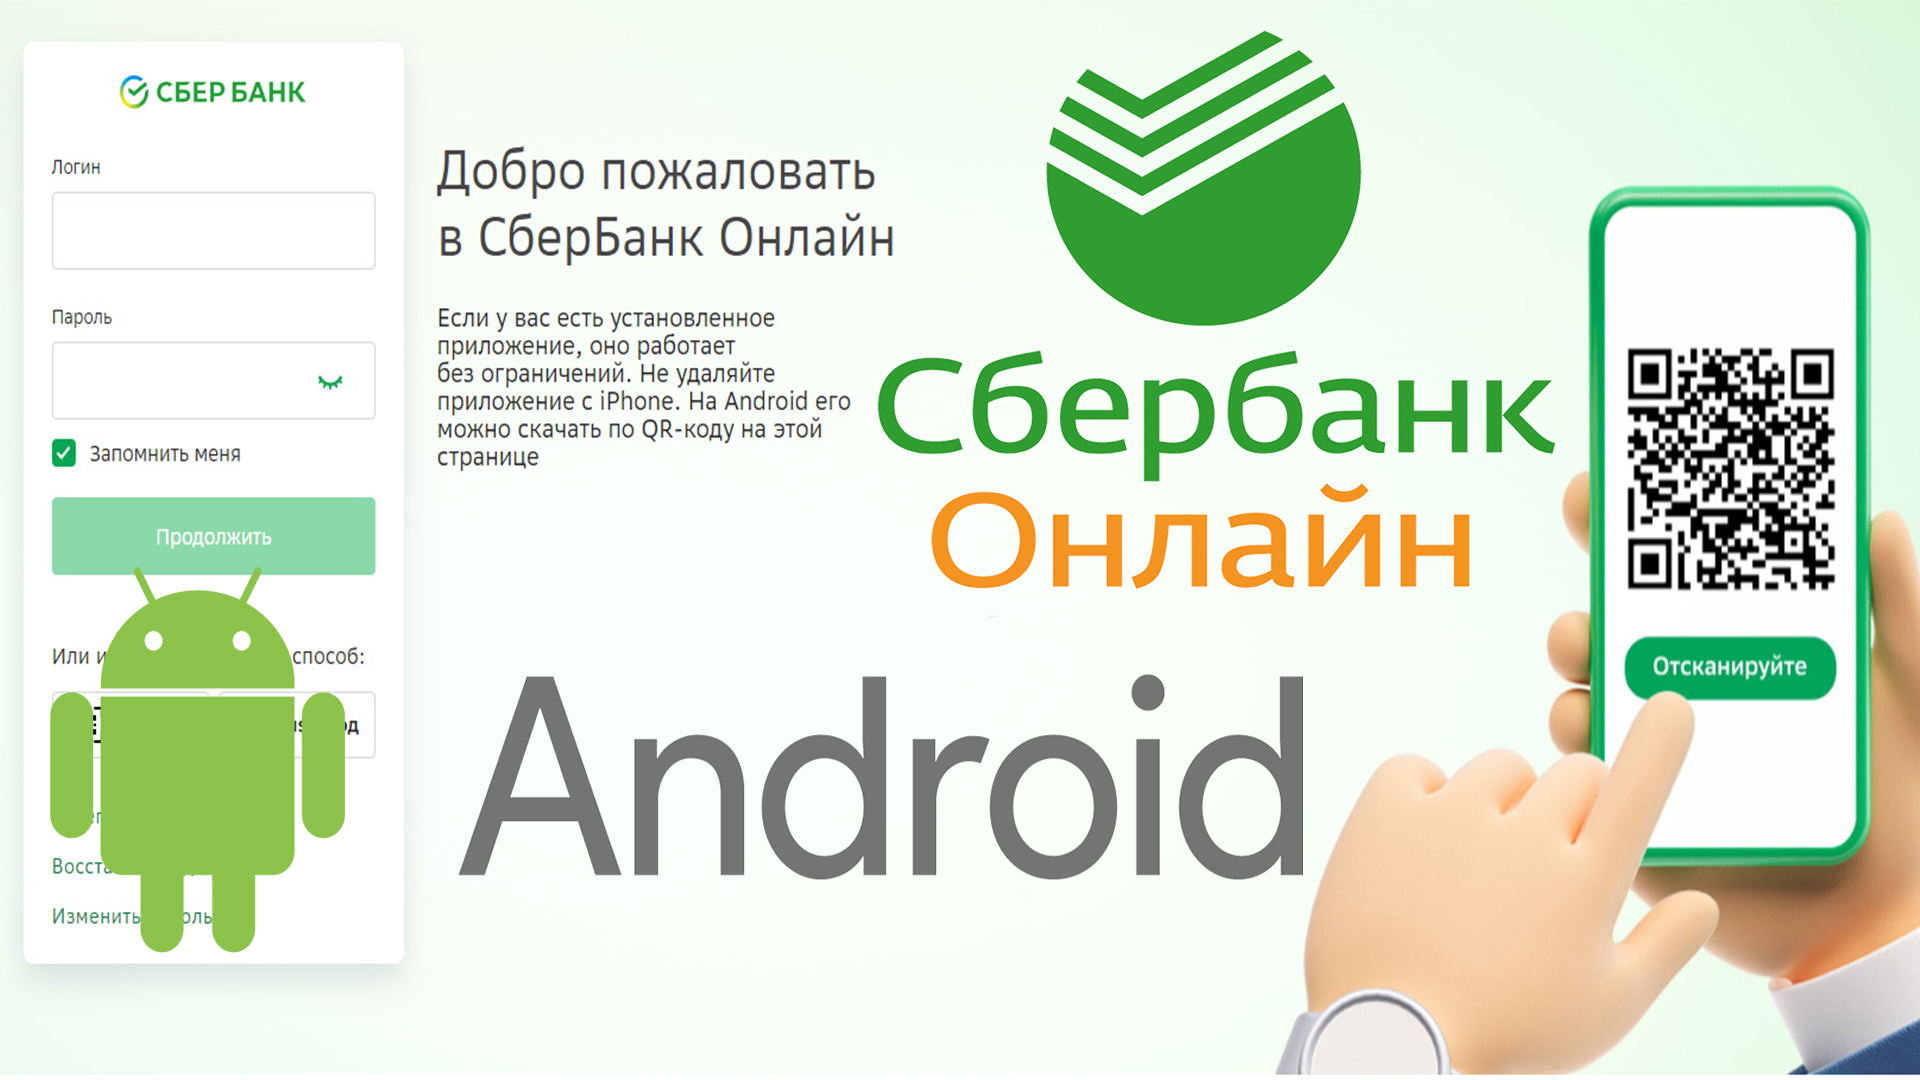 Сбербанк онлайн Android